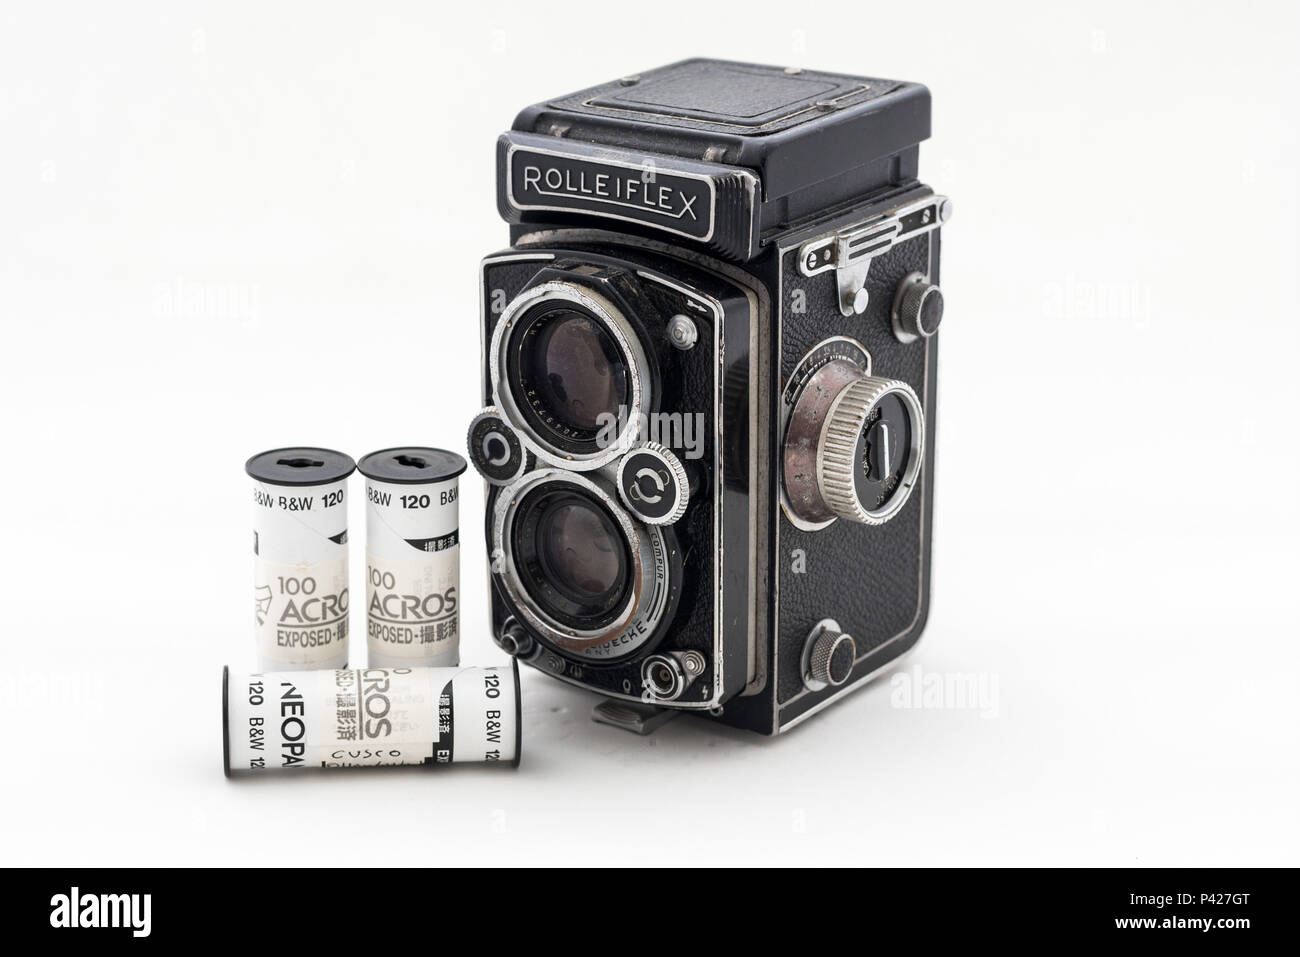 Antiga câmera Rolleiflex 1957 e rolos de filme Fuji. Stockfoto